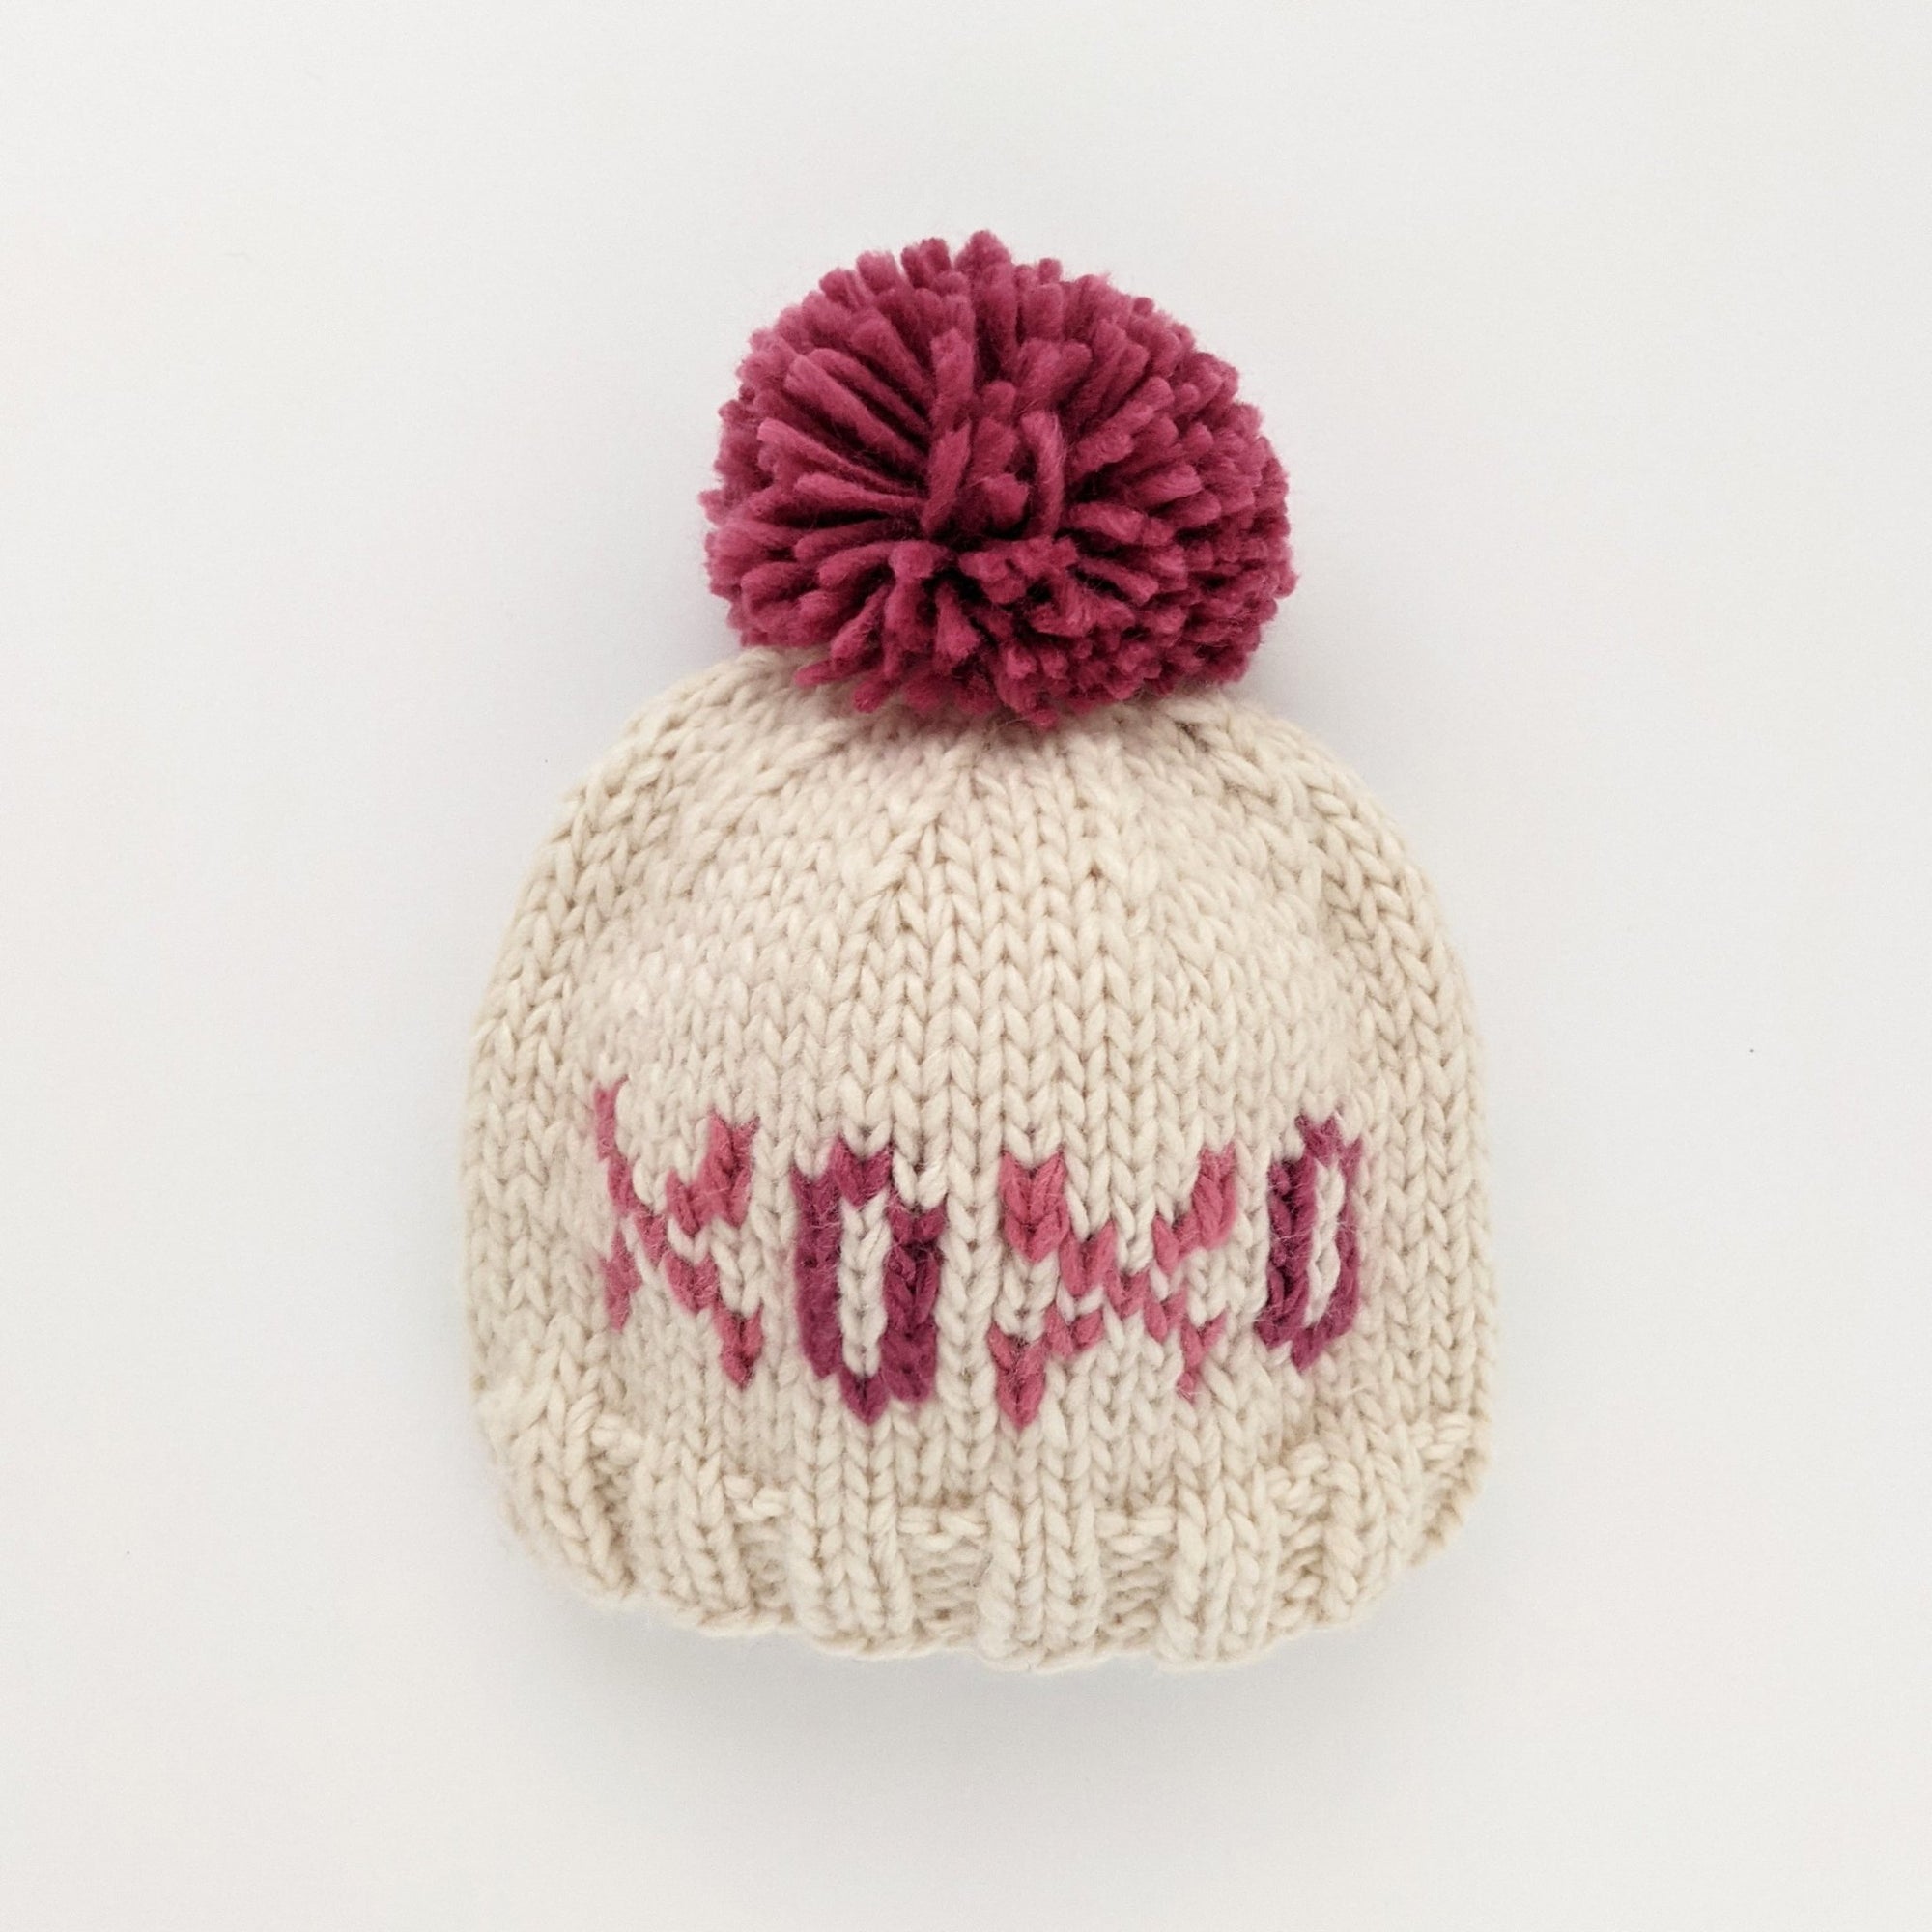 XOXO Valentine's Day Hand Knit Beanie Hat - Beanie Hats